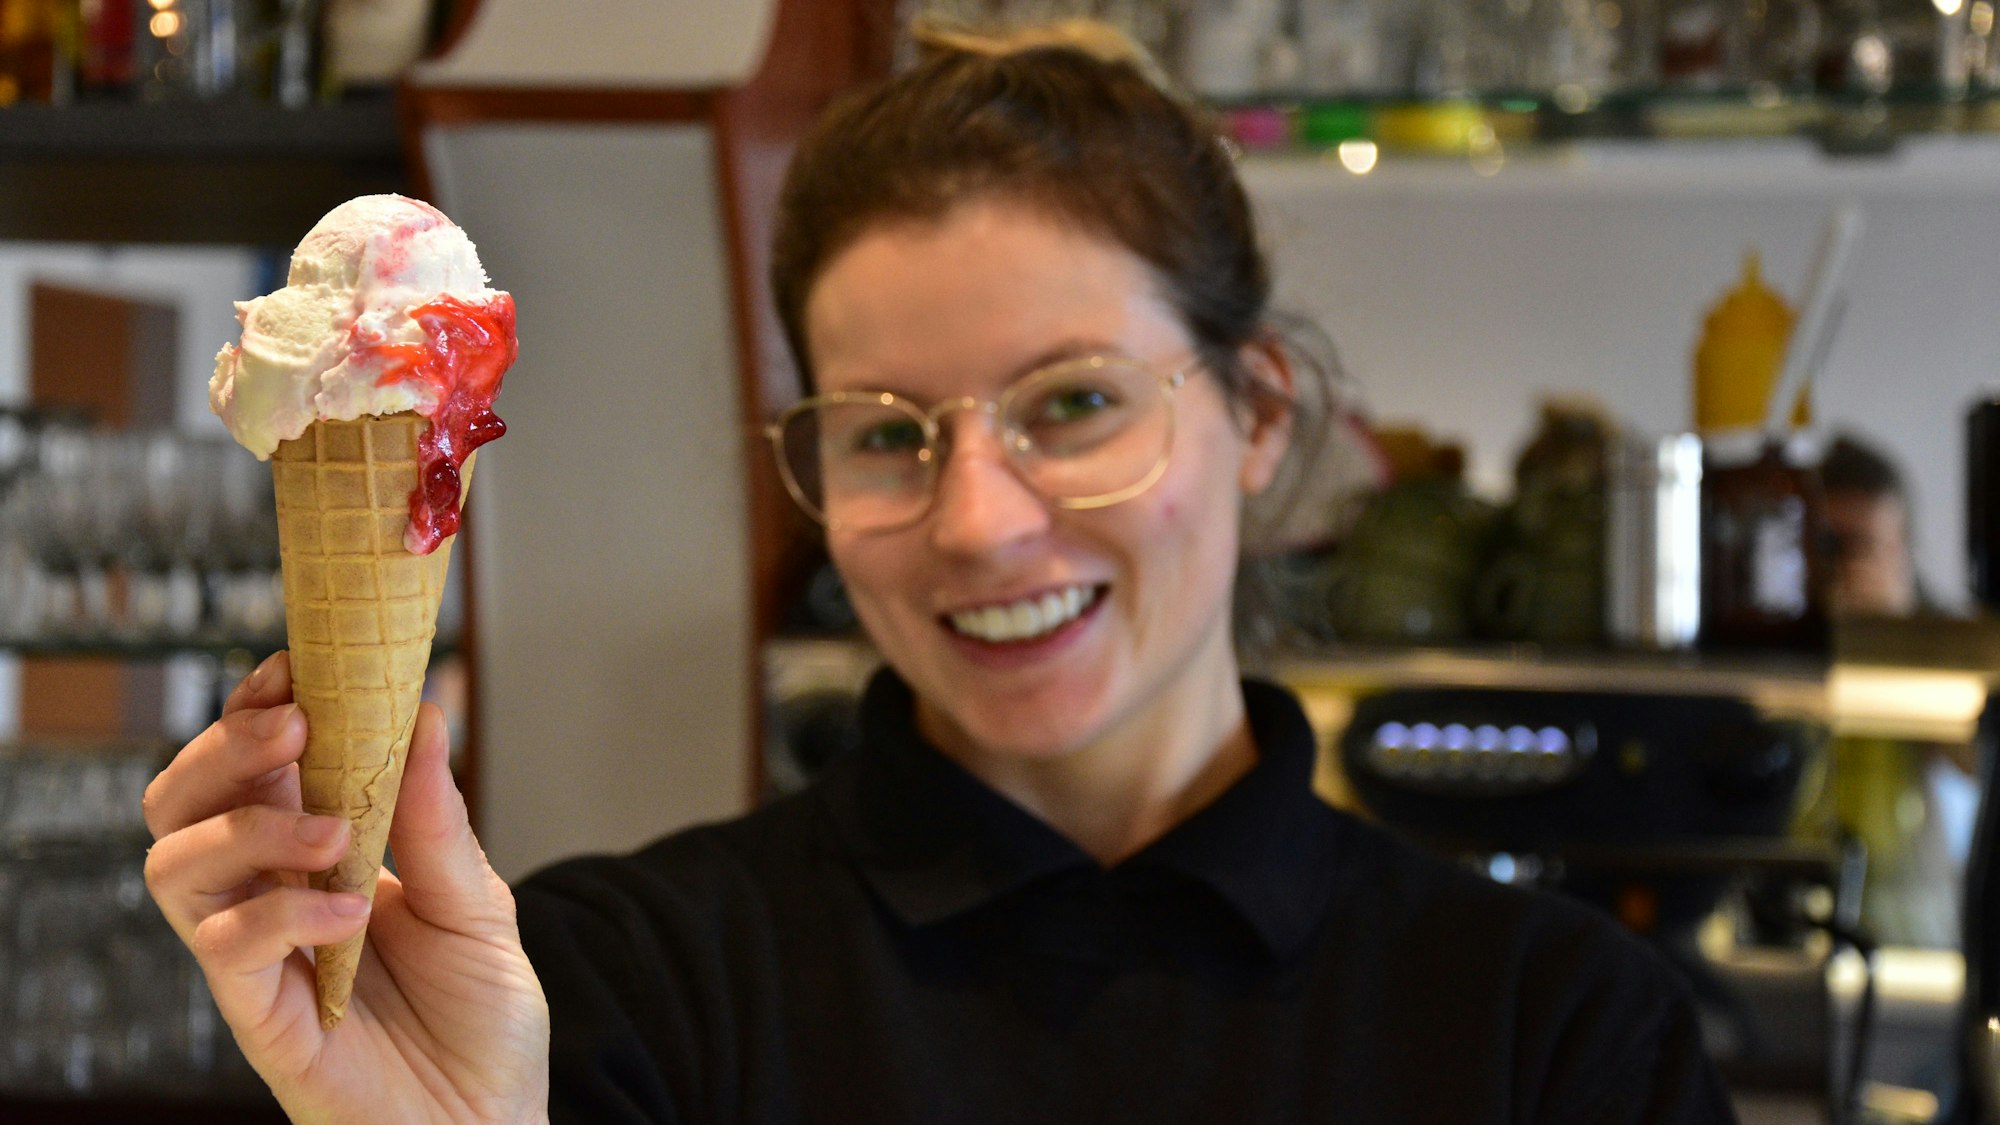 Kamilla Martins Cardoso serviert eine Eiswaffel im Eiscafé Darella in Sankt Augustin-Menden und lächelt dabei in die Kamera.